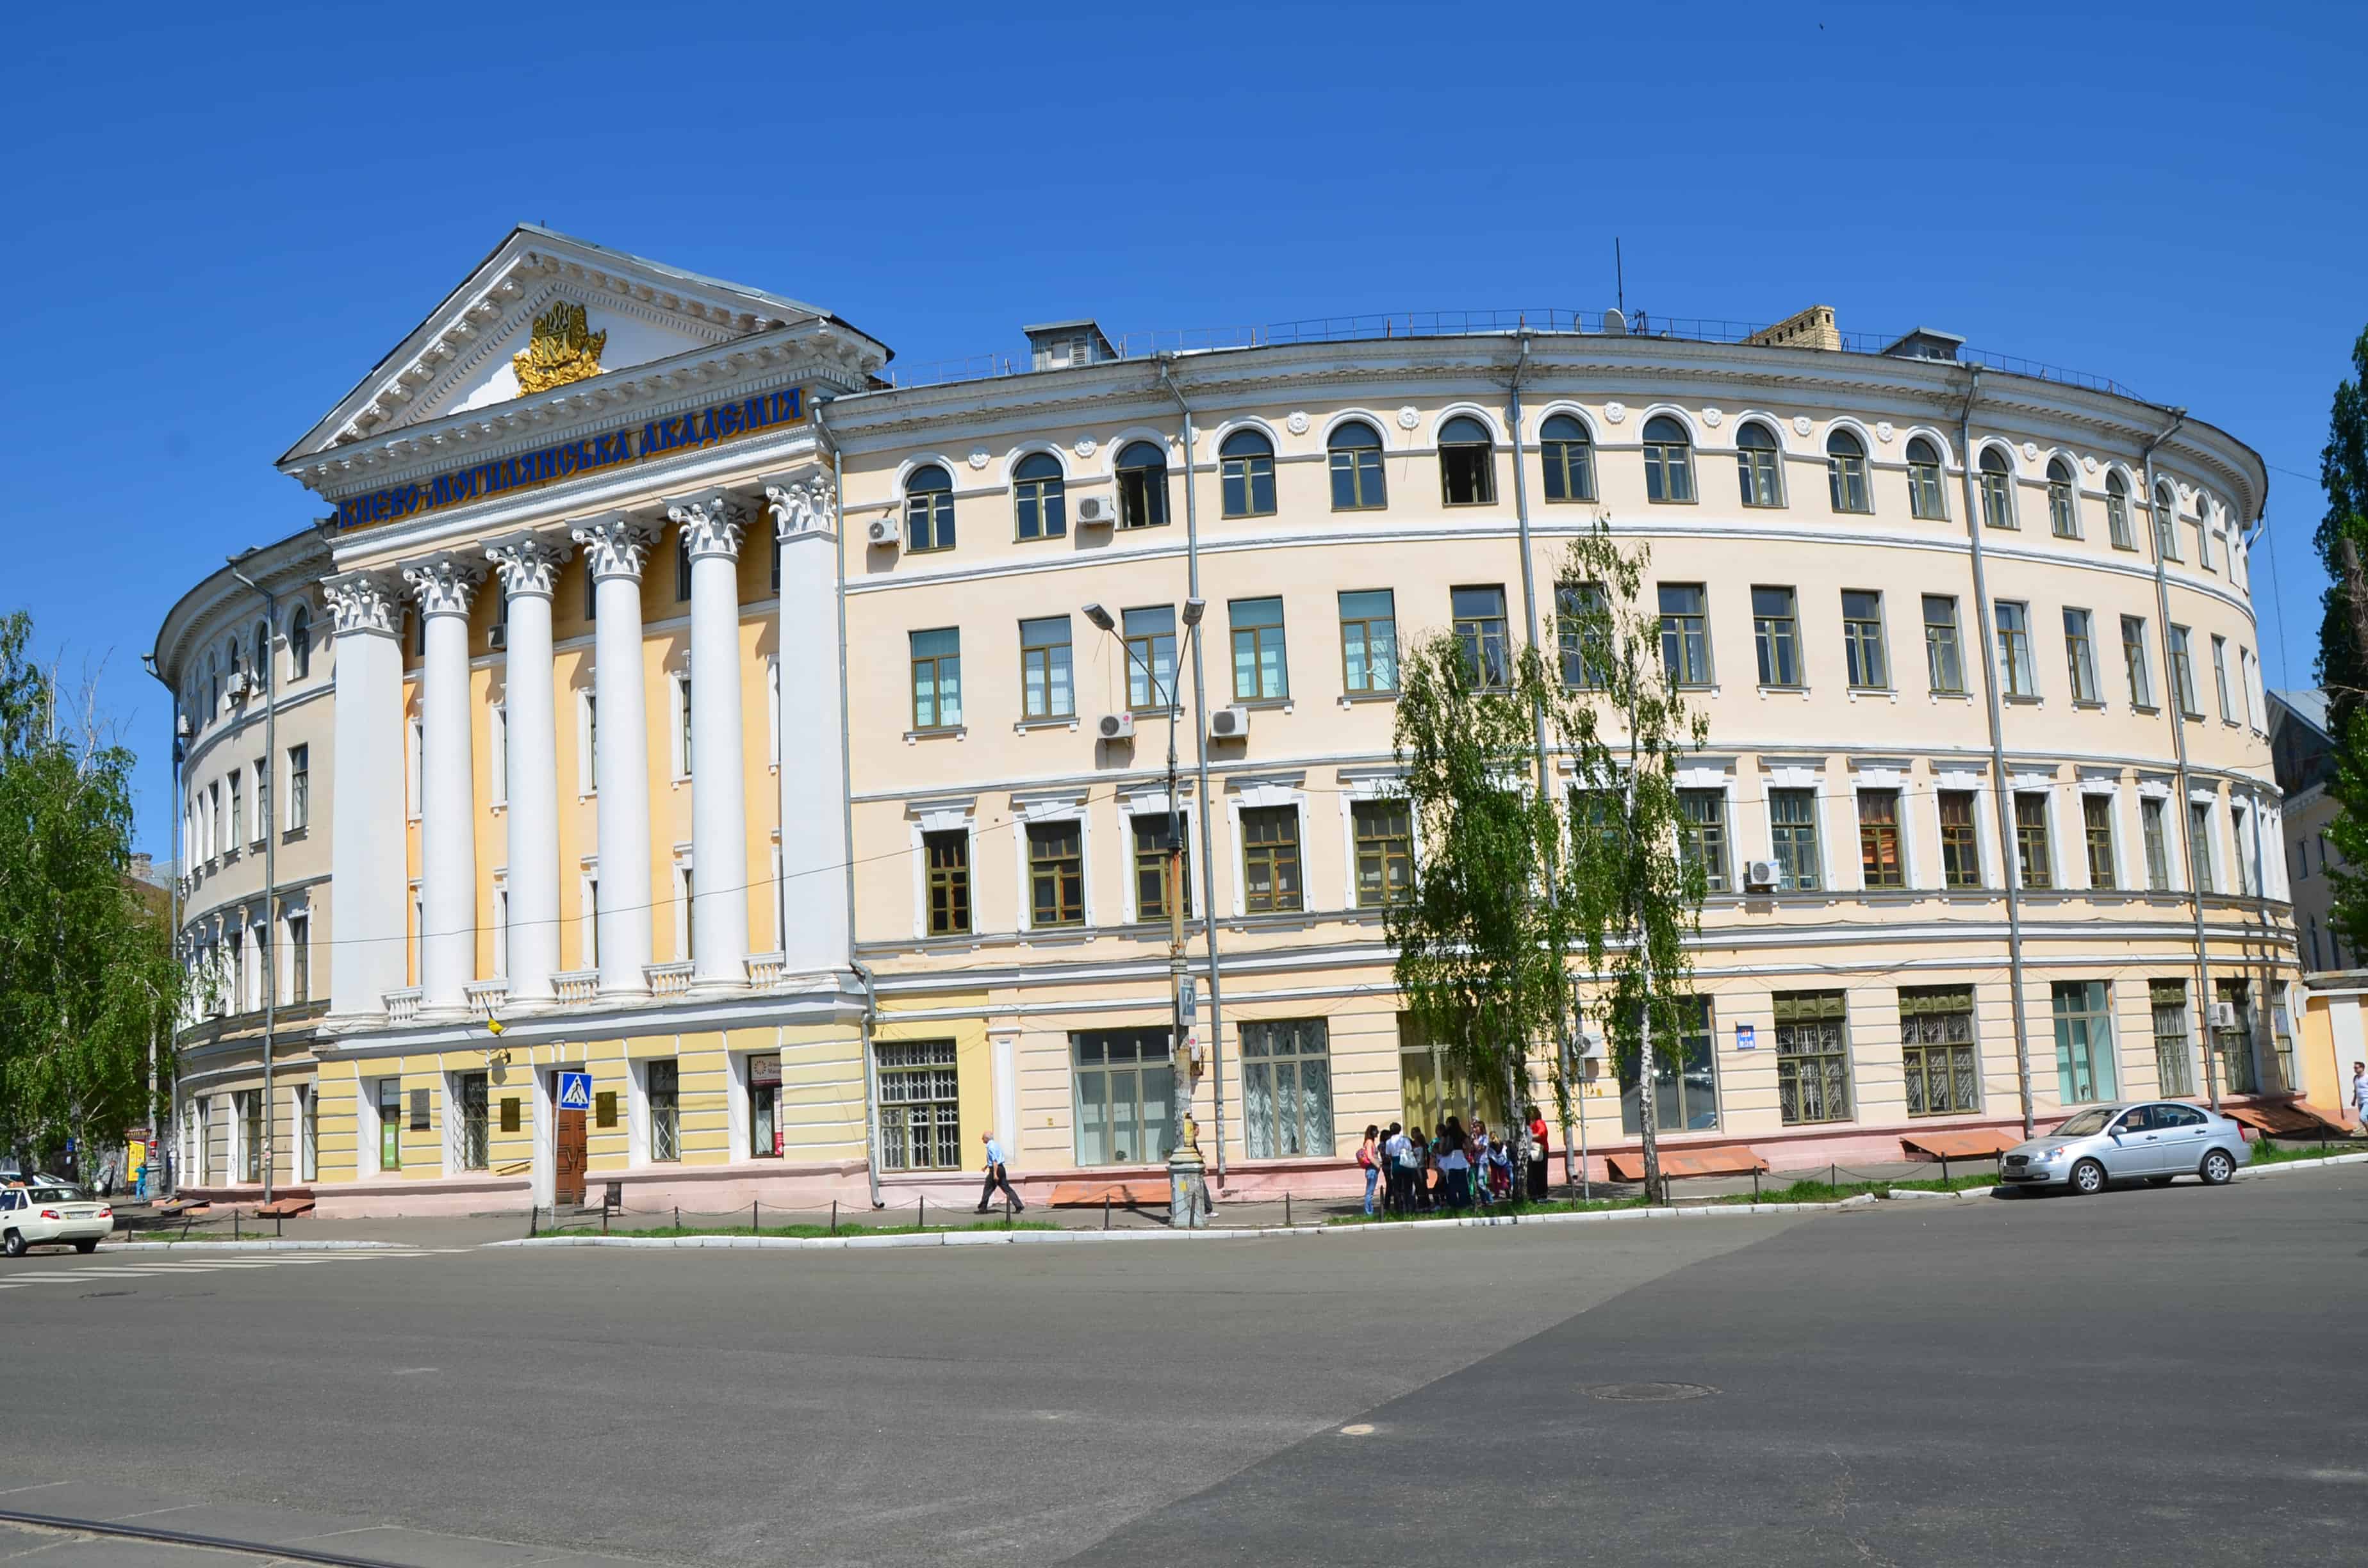 National University of Kyiv-Mohyla Academy on Kontraktova Square in Podil, Kyiv, Ukraine